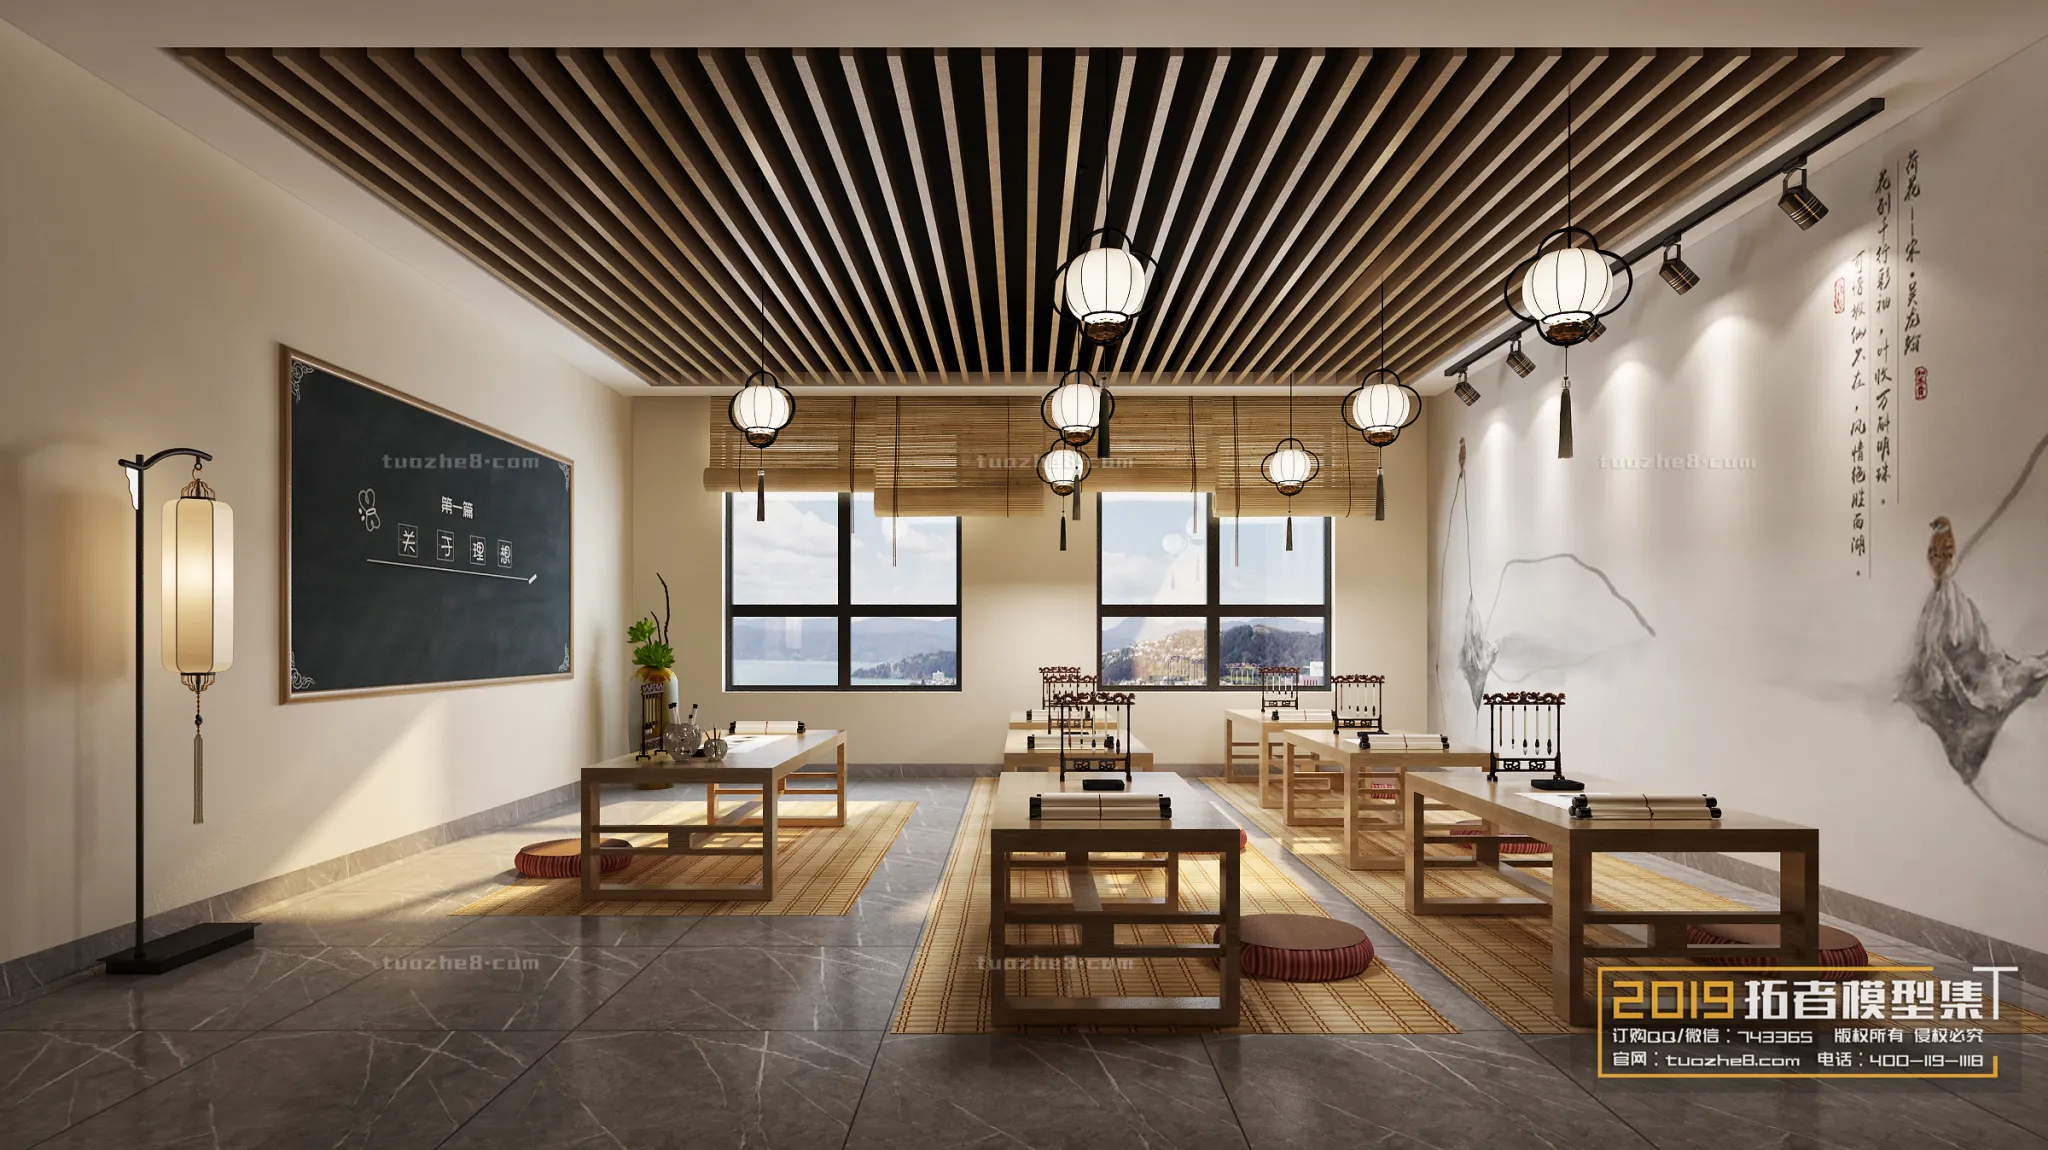 Extension Interior – KINDERGARTEN SCHOOL – 005